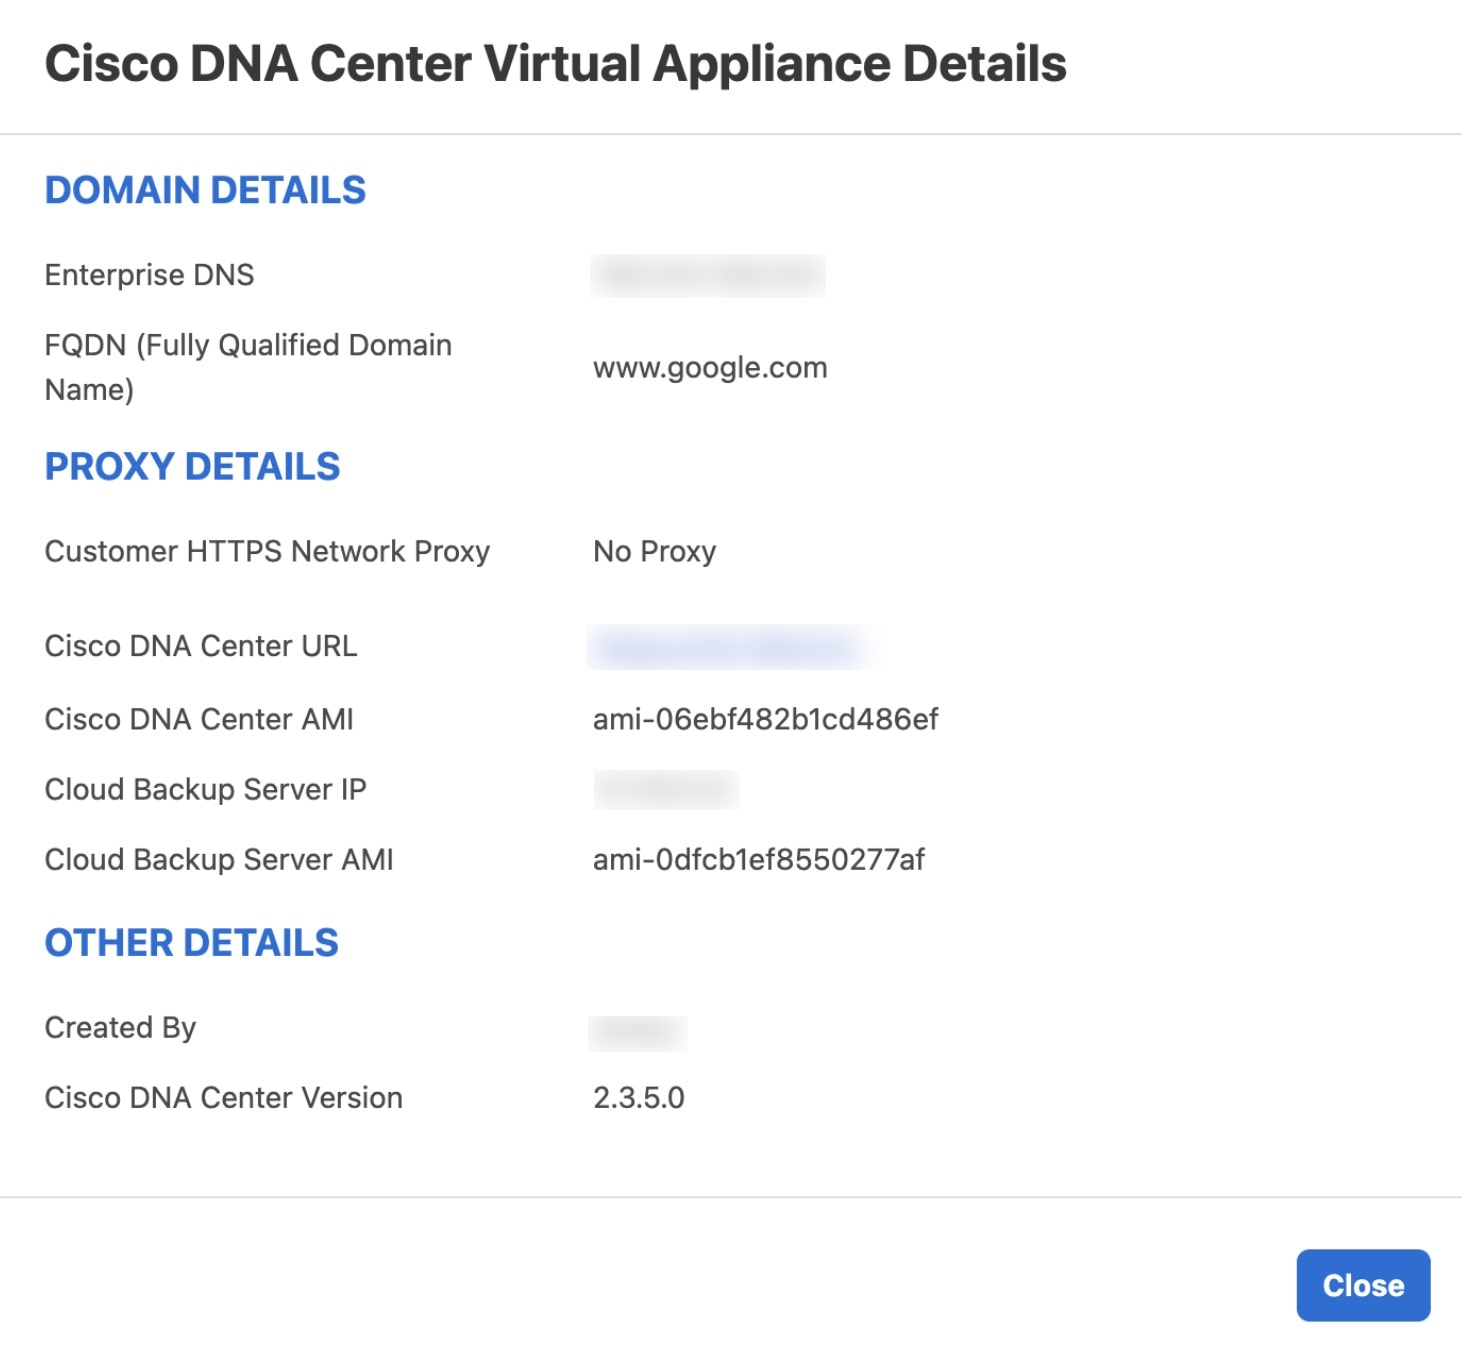 Cisco DNA Center 仮想アプライアンスの詳細 ウィンドウには、ドメインの詳細（エンタープライズ DNS や FQDN など）、プロキシの詳細（Cisco DNA Center の URL やクラウド バックアップ サーバーの IP など）、およびその他の詳細（Cisco DNA Center VA の作成者や Cisco DNA Center のバージョンなど）が表示されます。